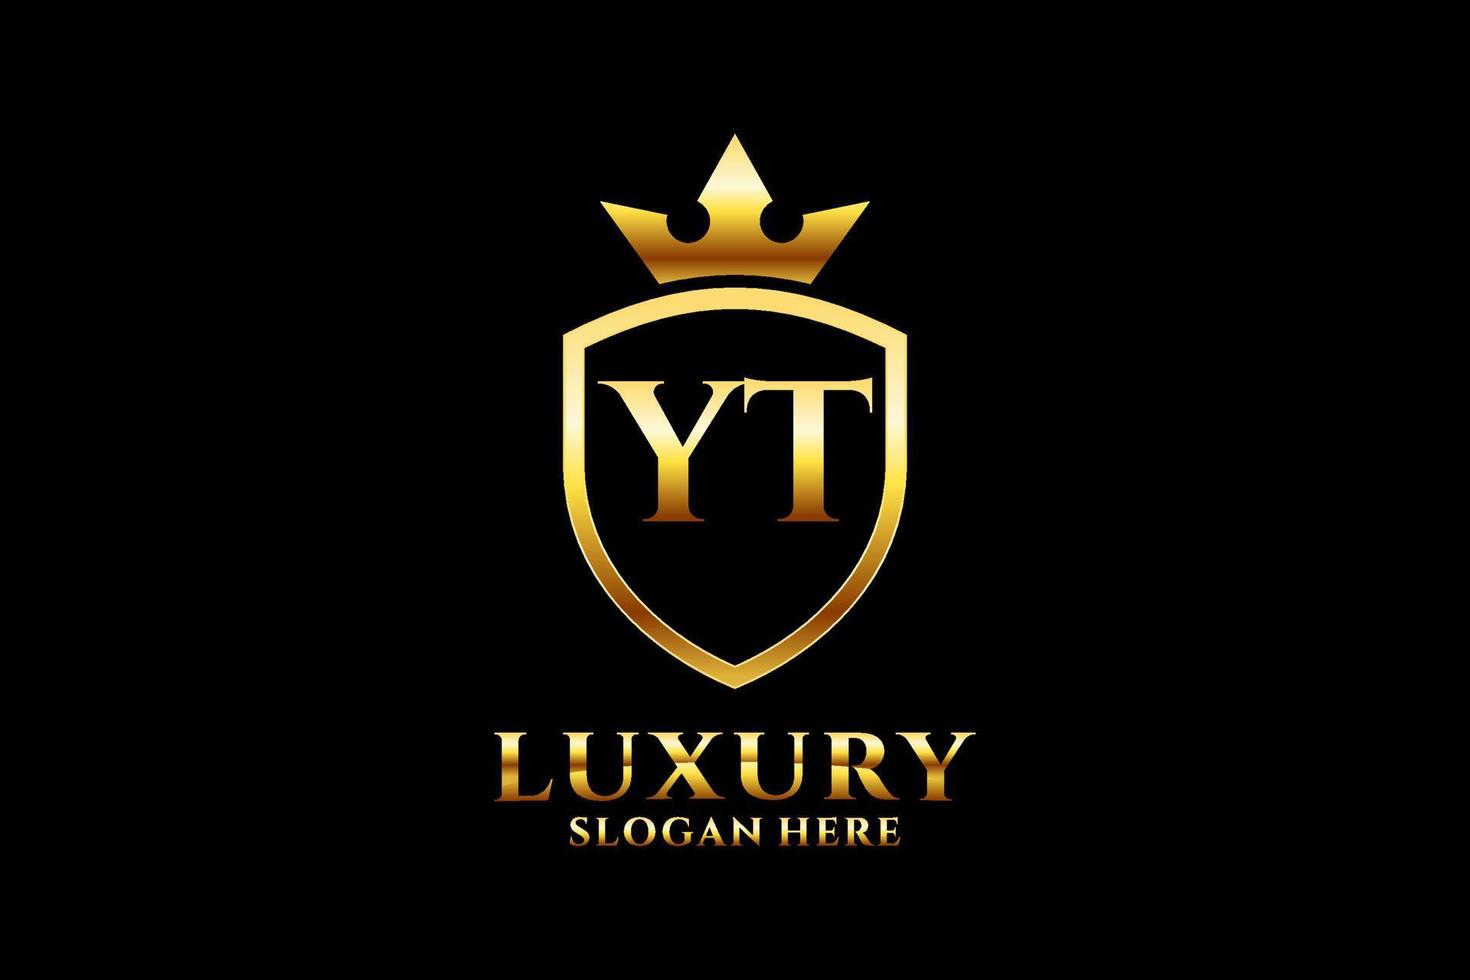 Initial yt elegantes Luxus-Monogramm-Logo oder Abzeichen-Vorlage mit Schriftrollen und Königskrone – perfekt für luxuriöse Branding-Projekte vektor